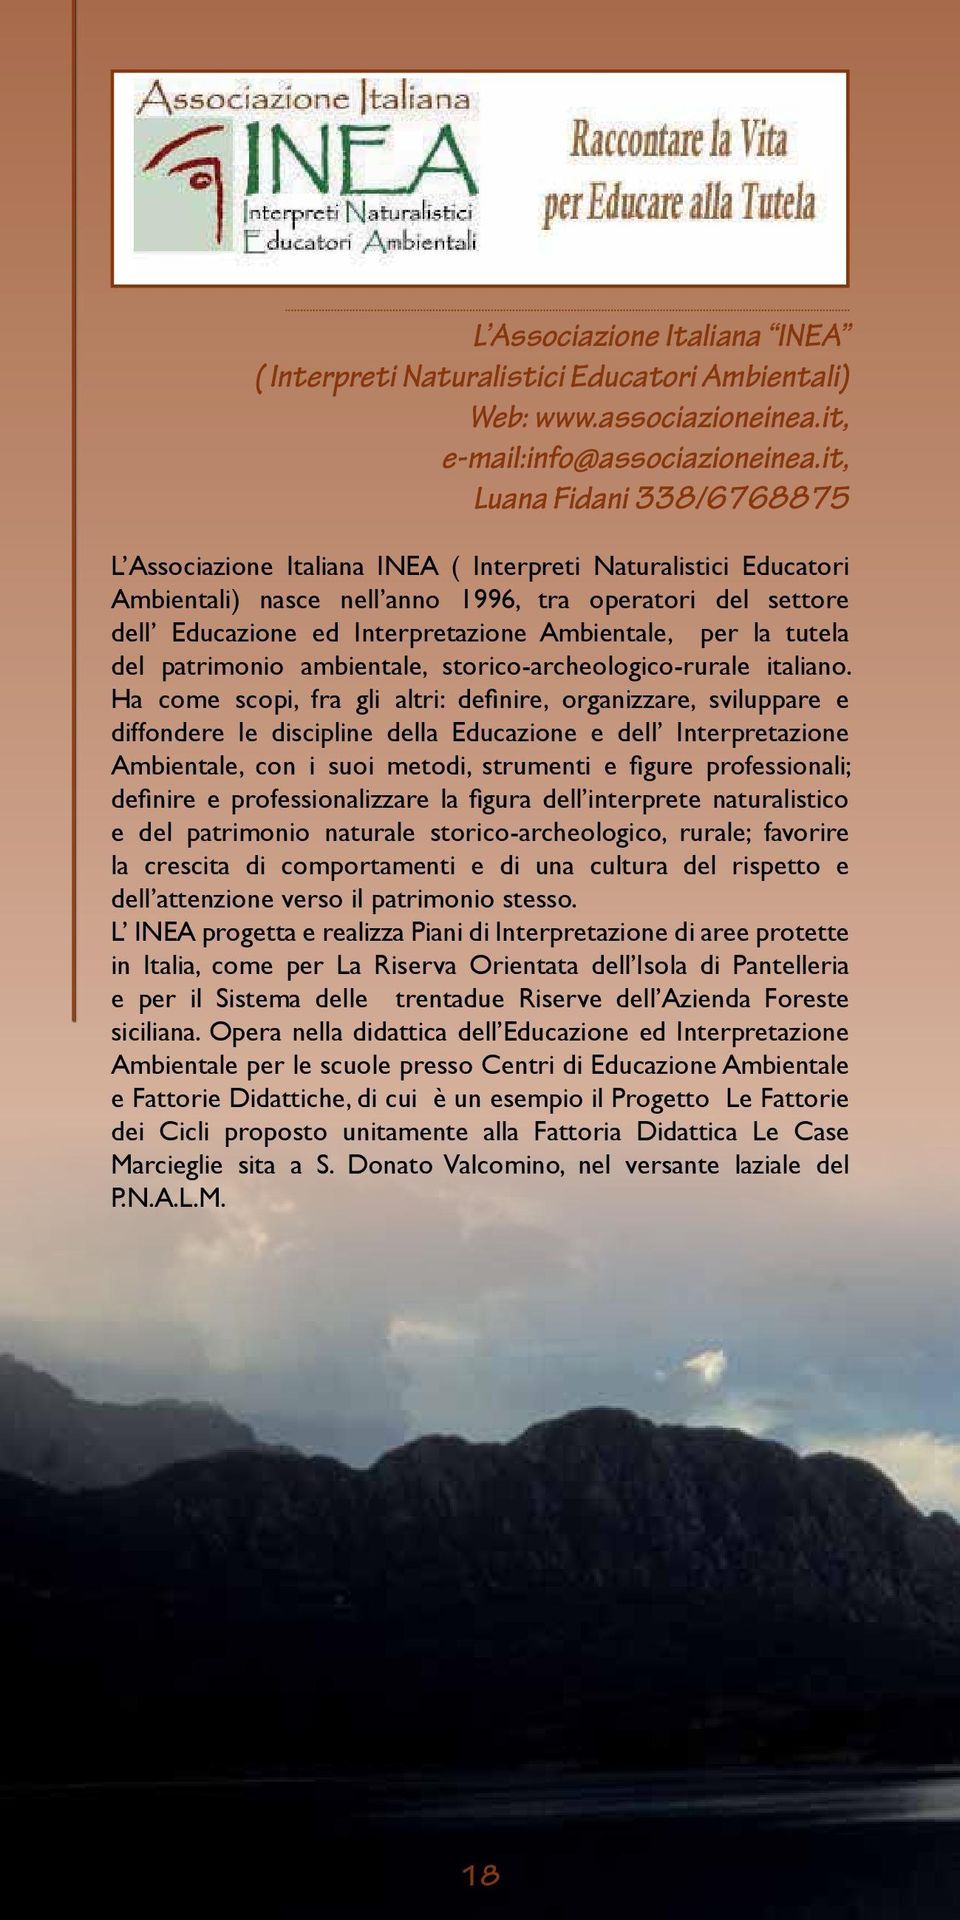 Ambientale, per la tutela del patrimonio ambientale, storico-archeologico-rurale italiano.